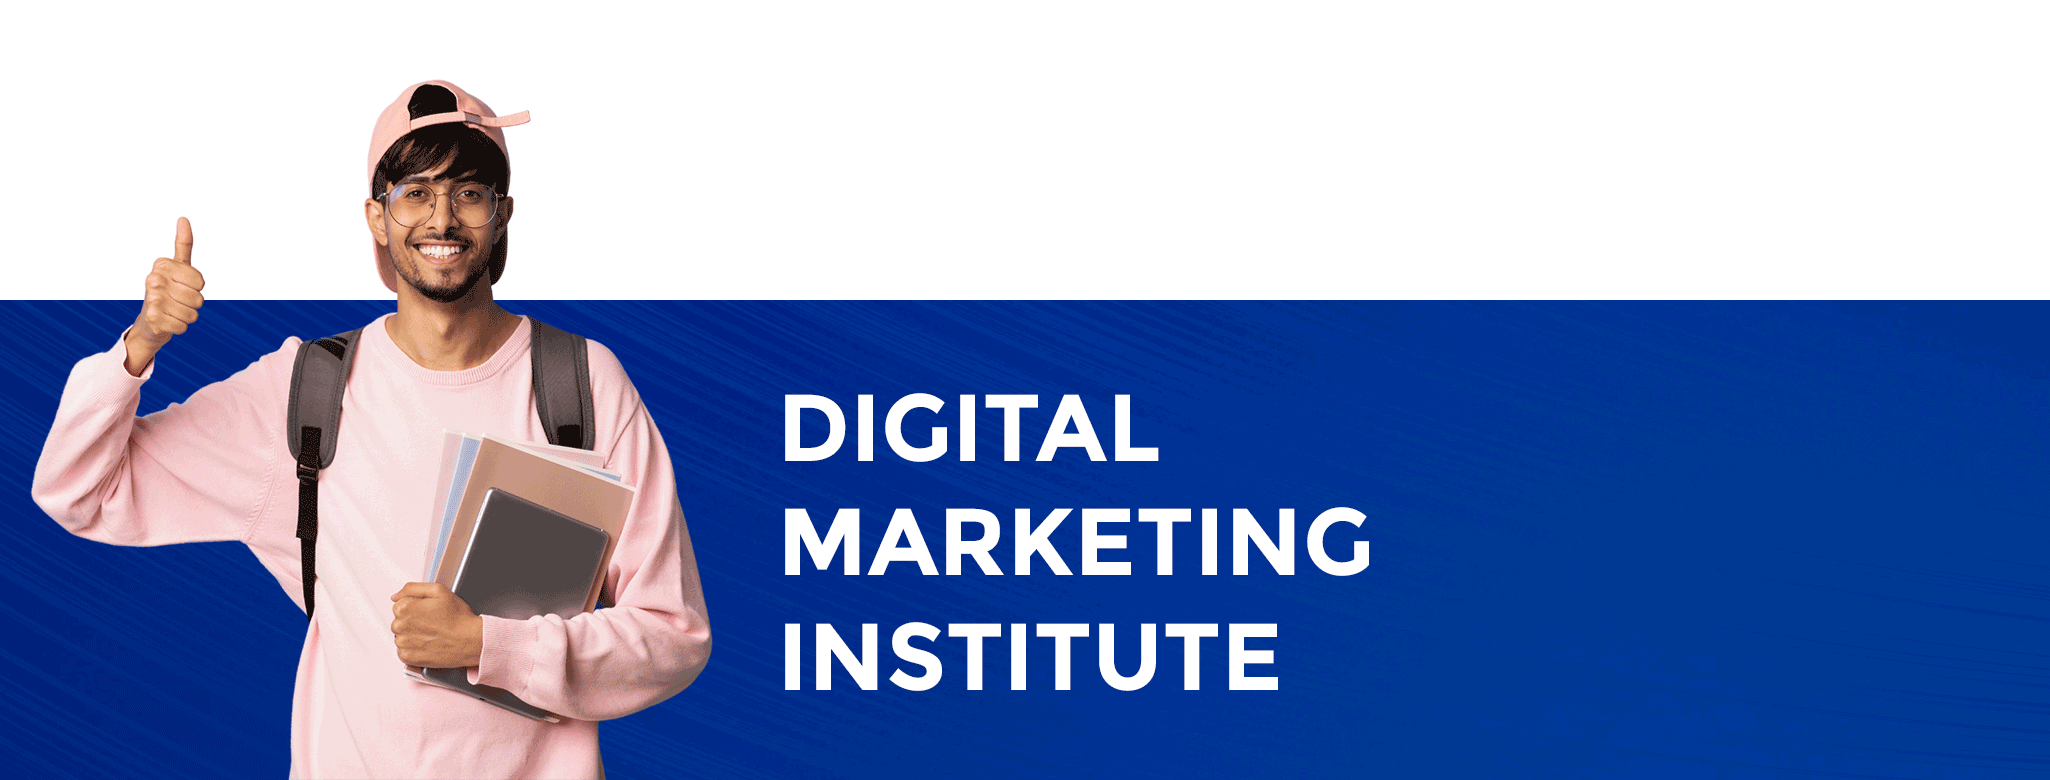 Digital Marketing Courses Andheri Mumbai